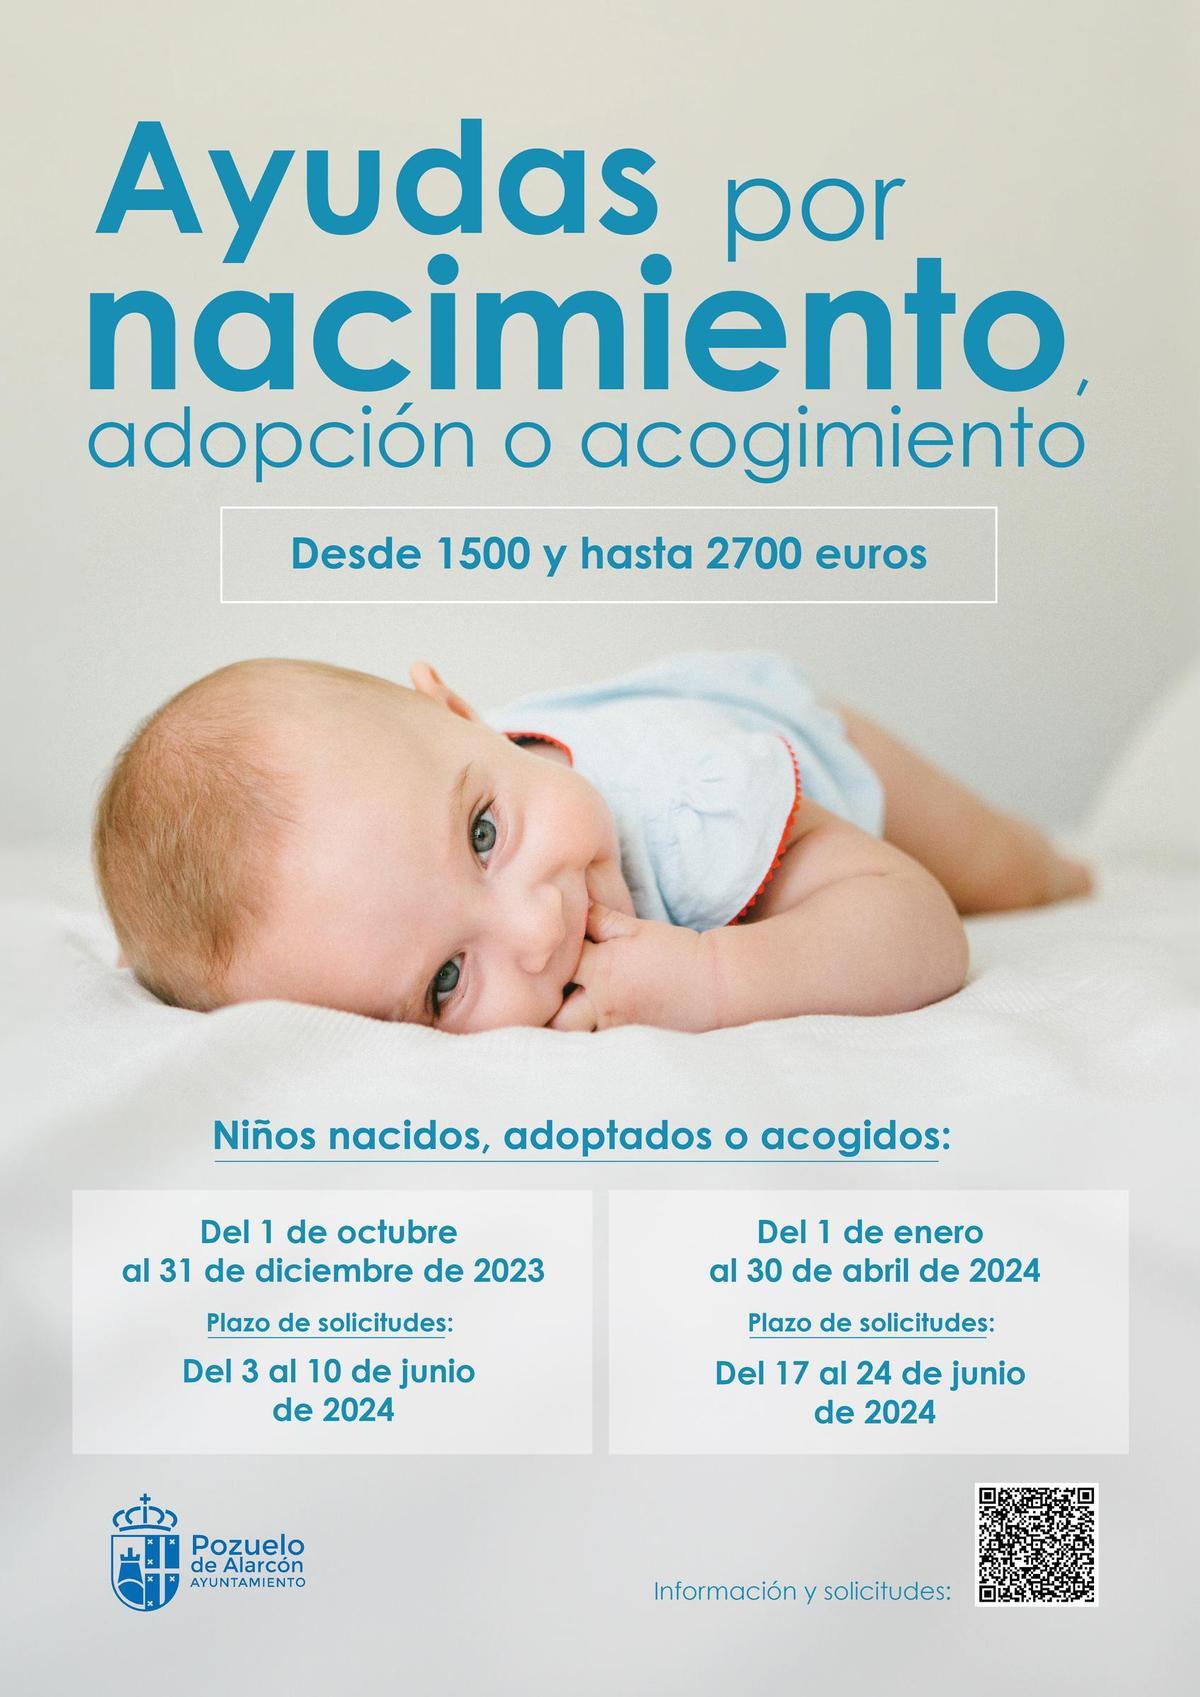 Ayudas del Ayuntamiento de Pozuelo de Alarcón: una forma de fomentar la natalidad